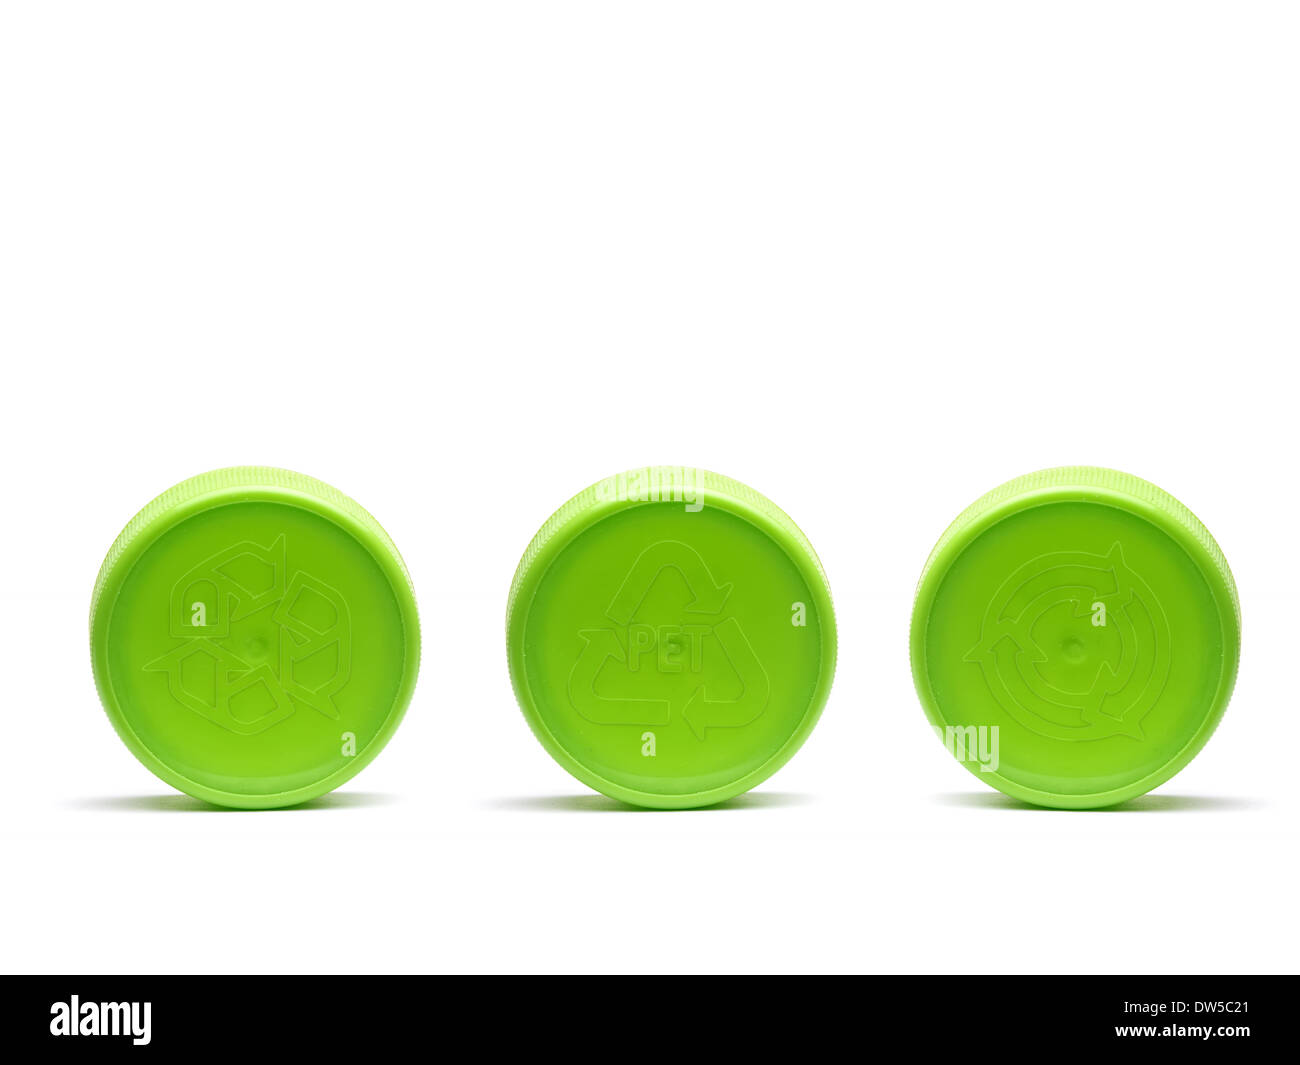 Trois bouchons en plastique vert avec différents symboles de recyclage embosed shot on white Banque D'Images